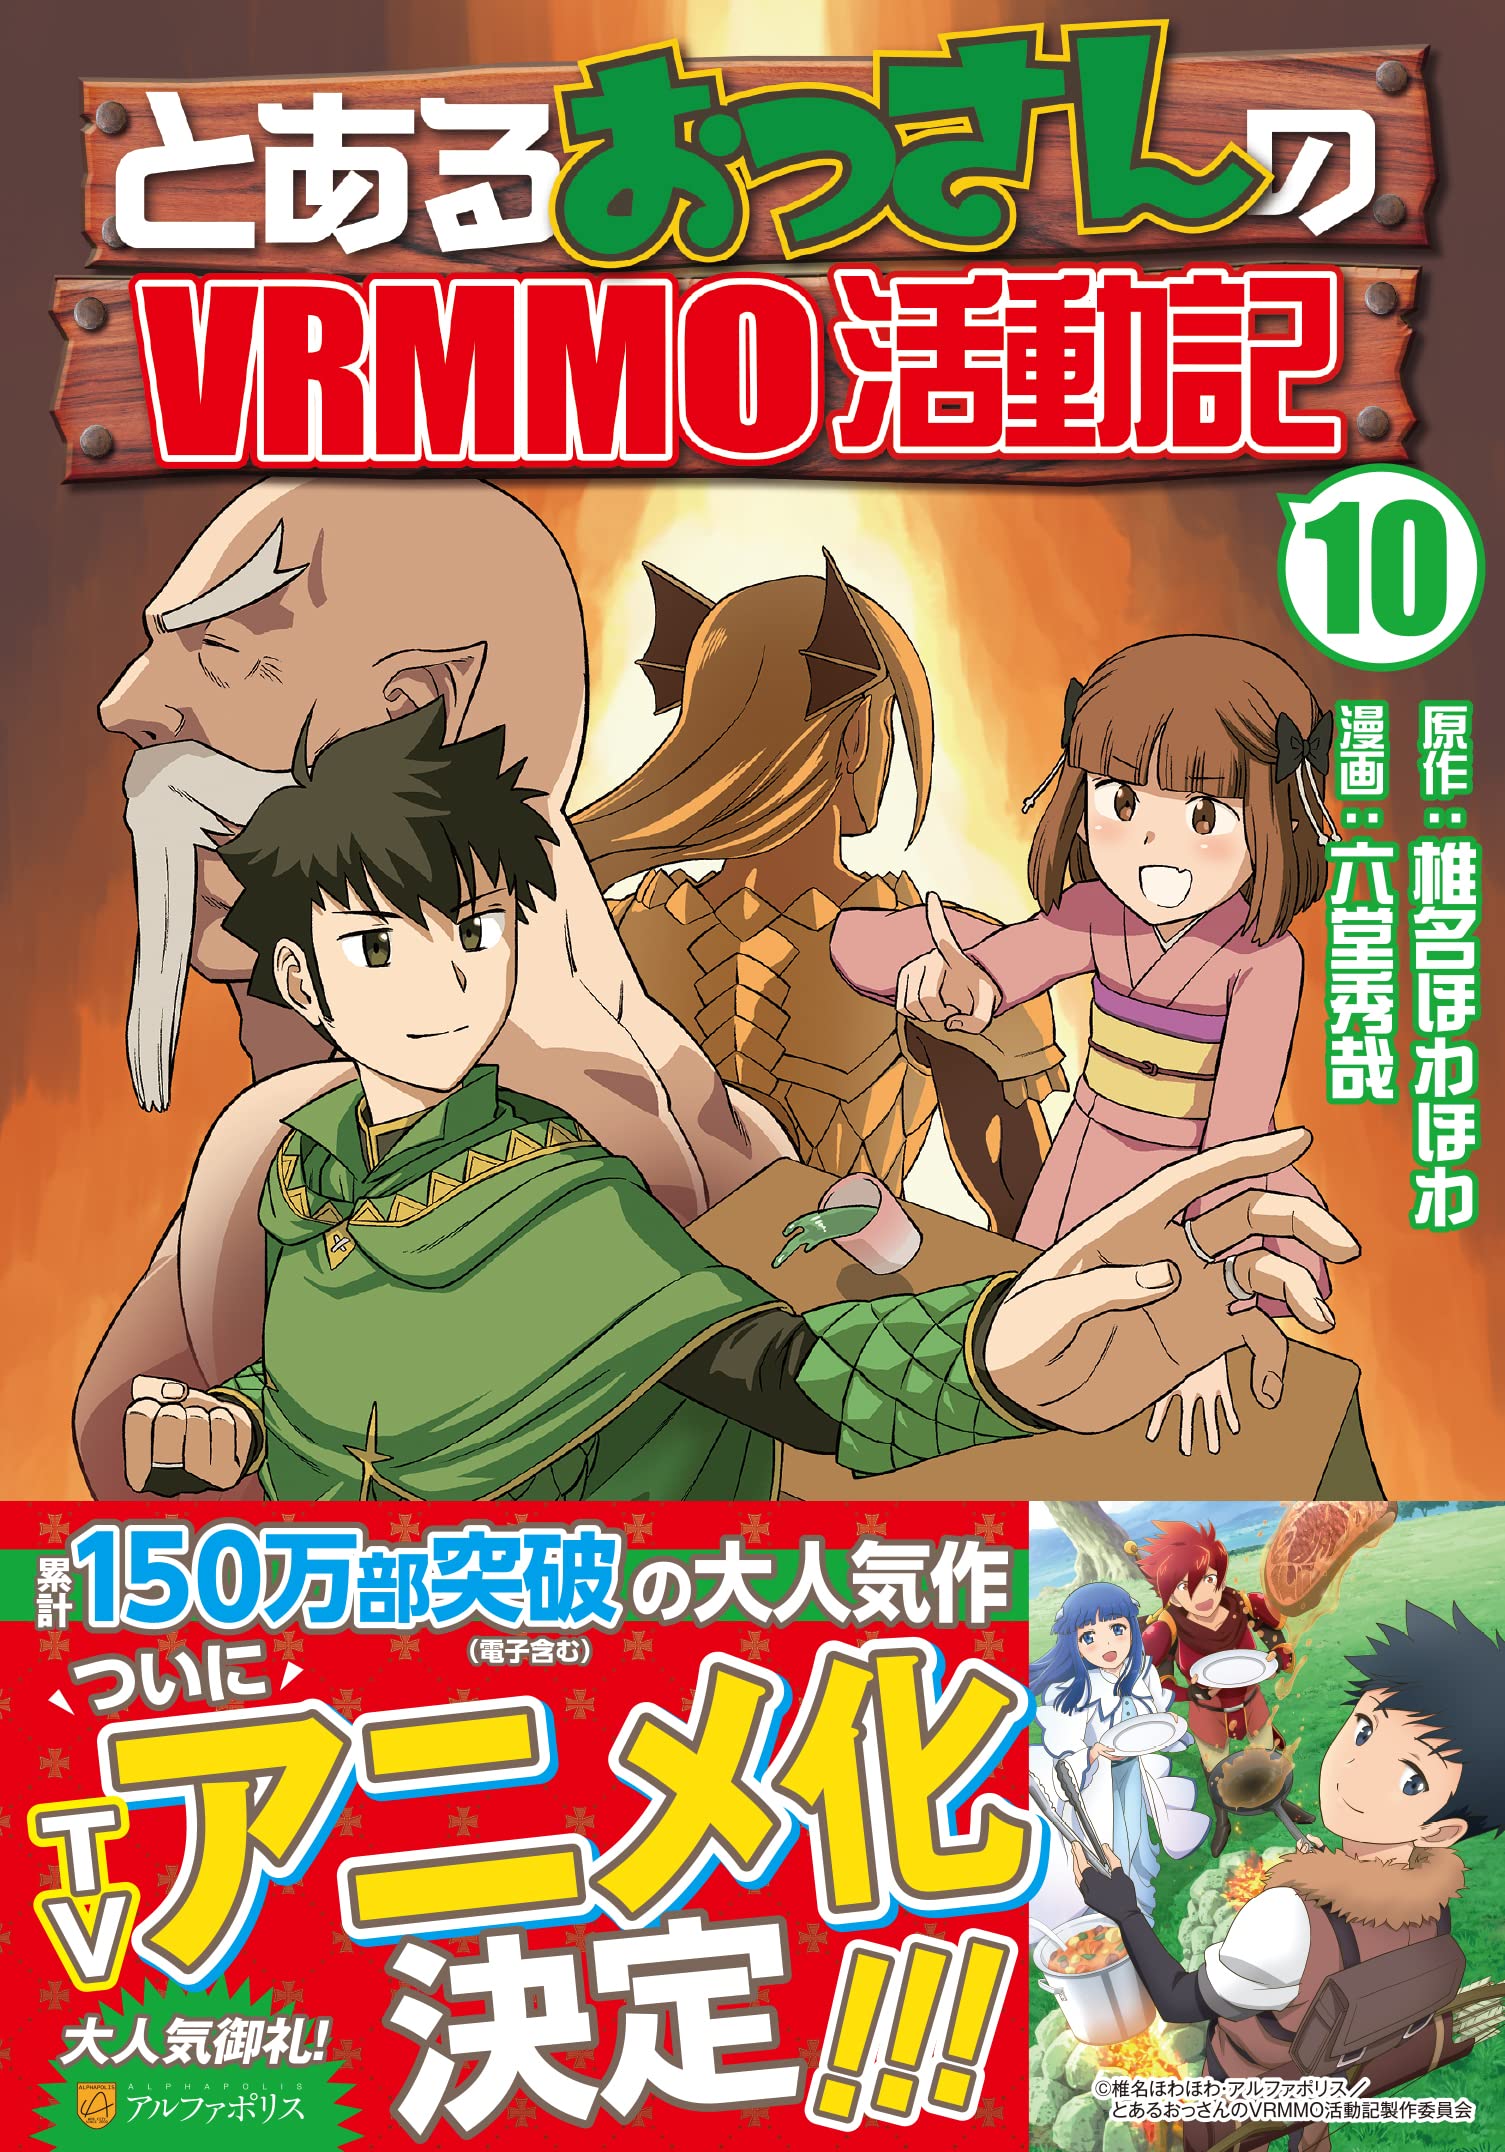 Anime: Toaru Ossan no VRMMO Katsudouki